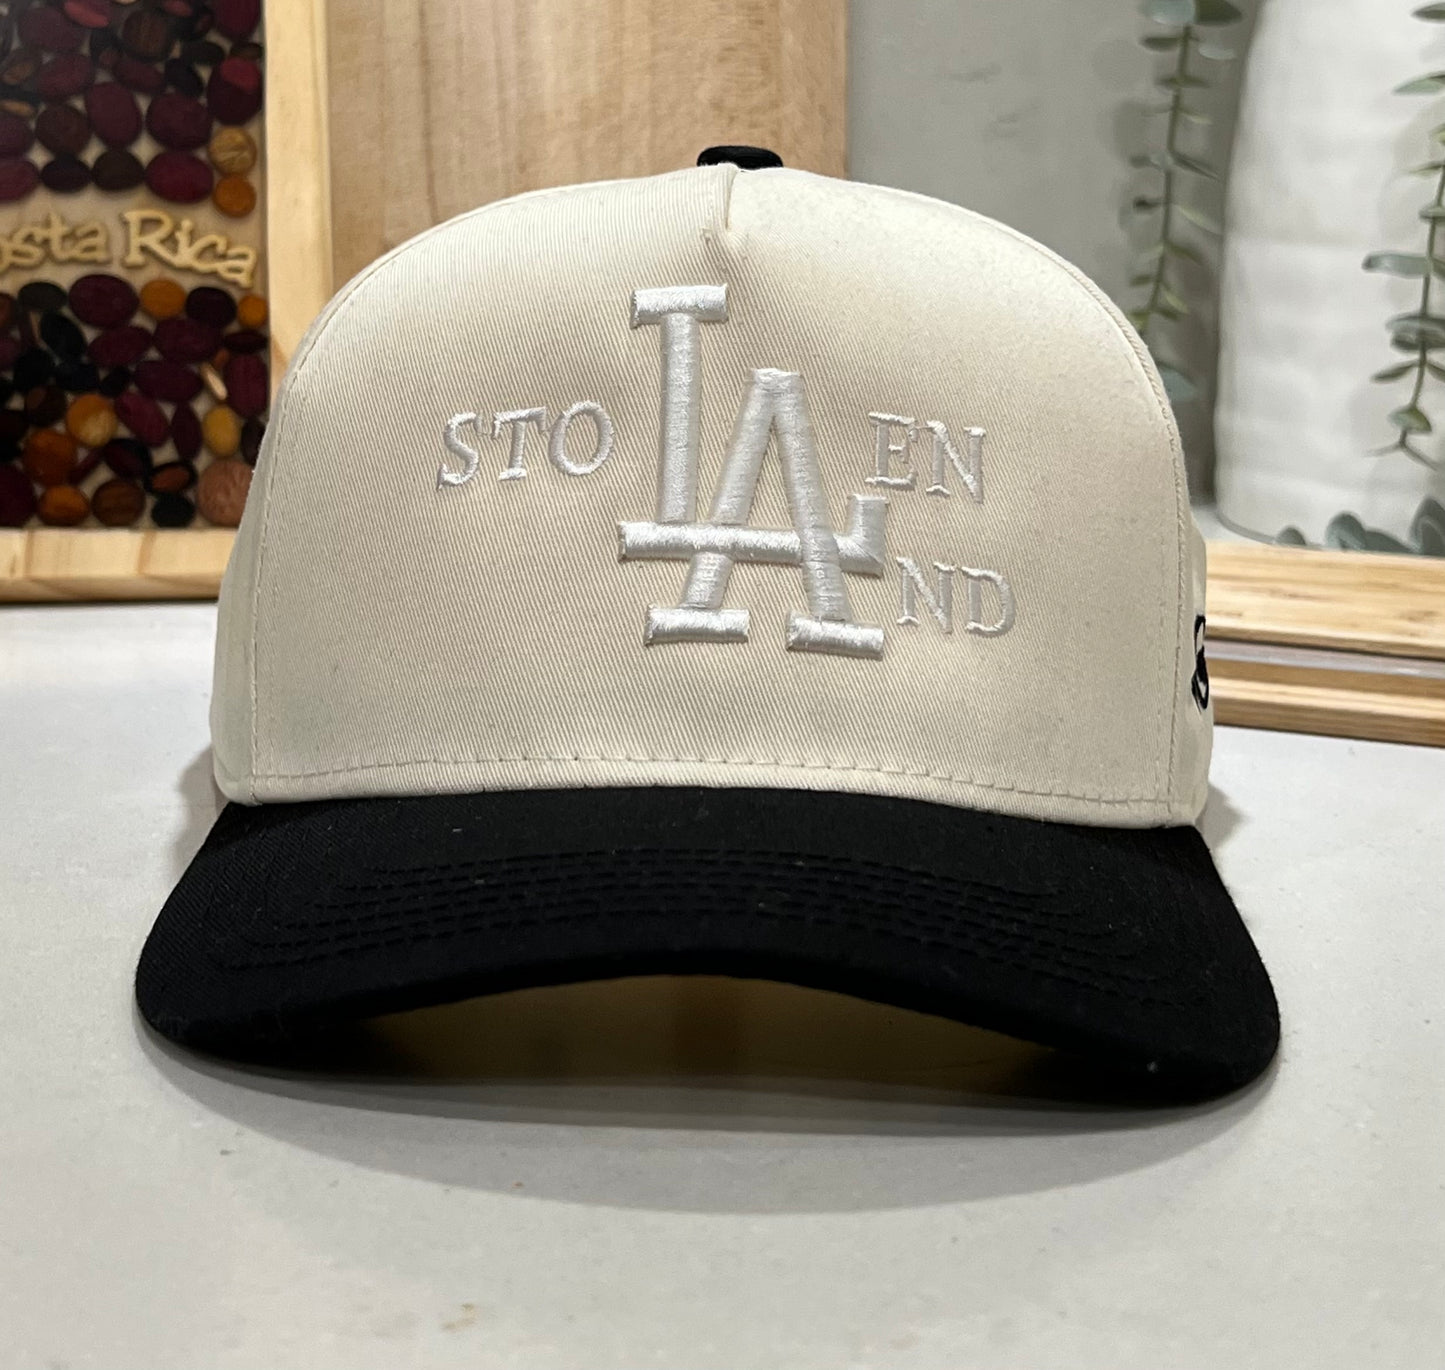 Stolen LAnd Hat ( white on off white )